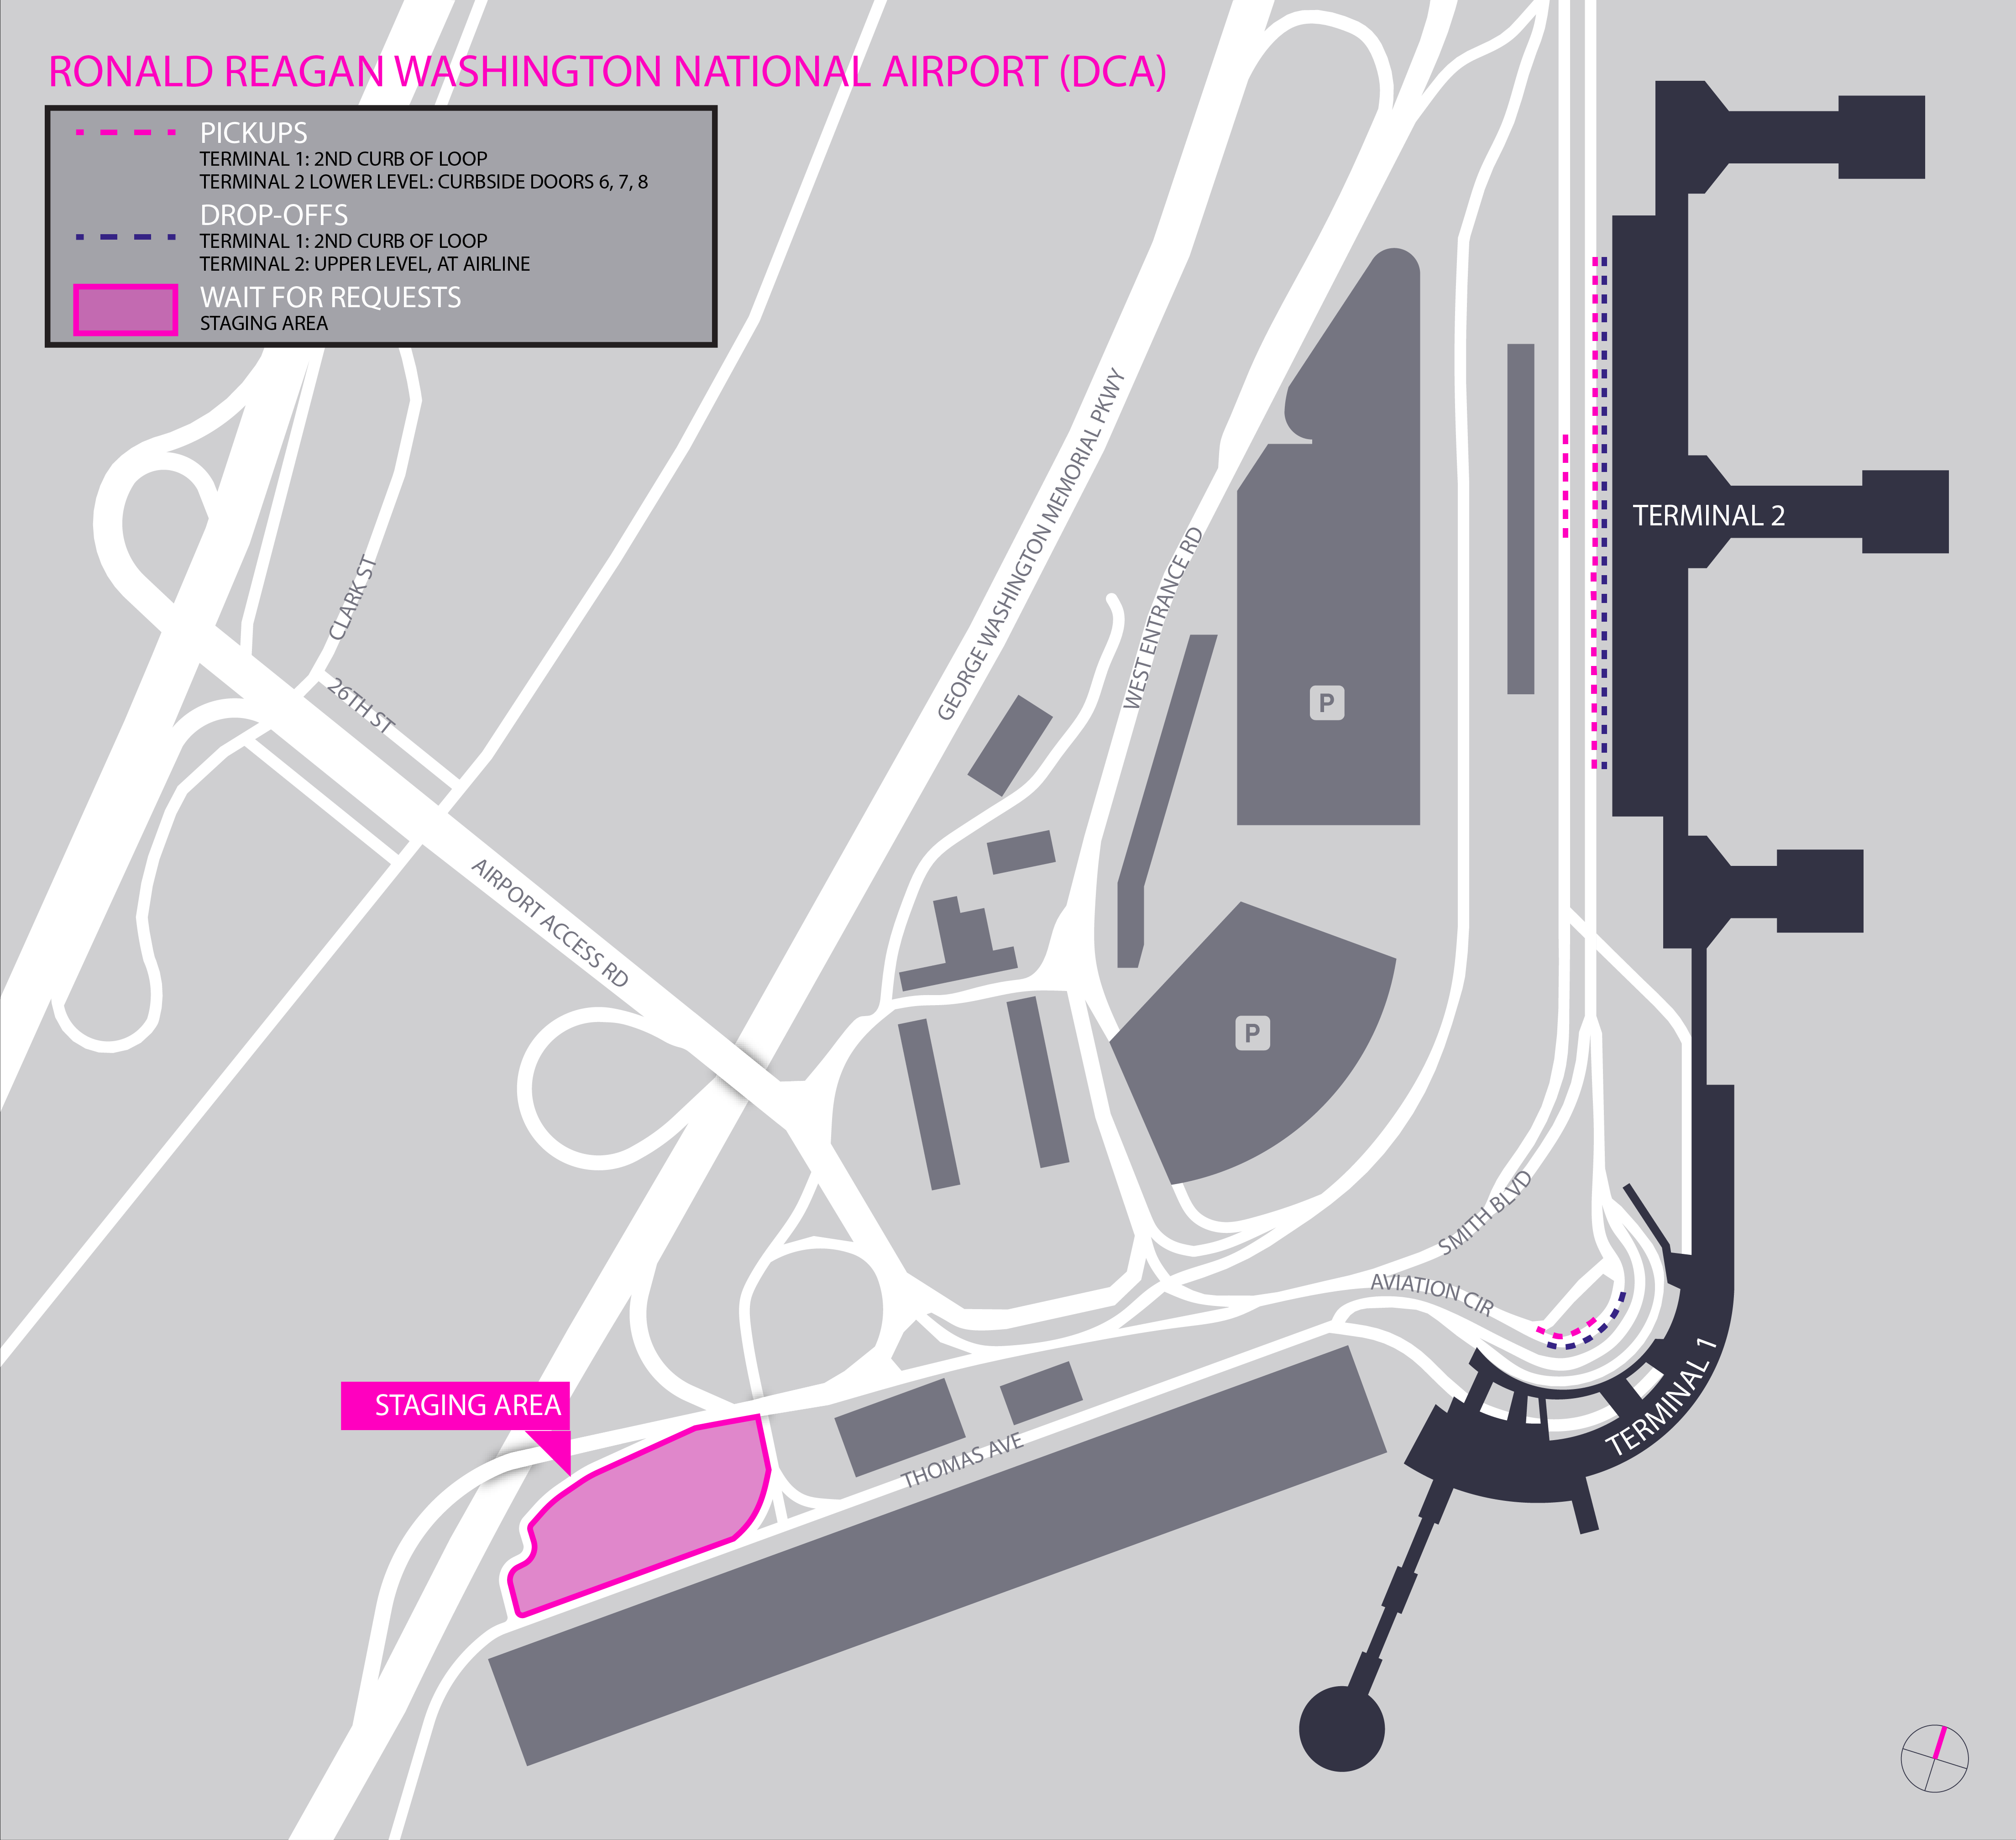 Esta imagen es un mapa del aeropuerto Ronald Reagan. Incluye el área de espera y las zonas para recoger y dejar pasajeros.